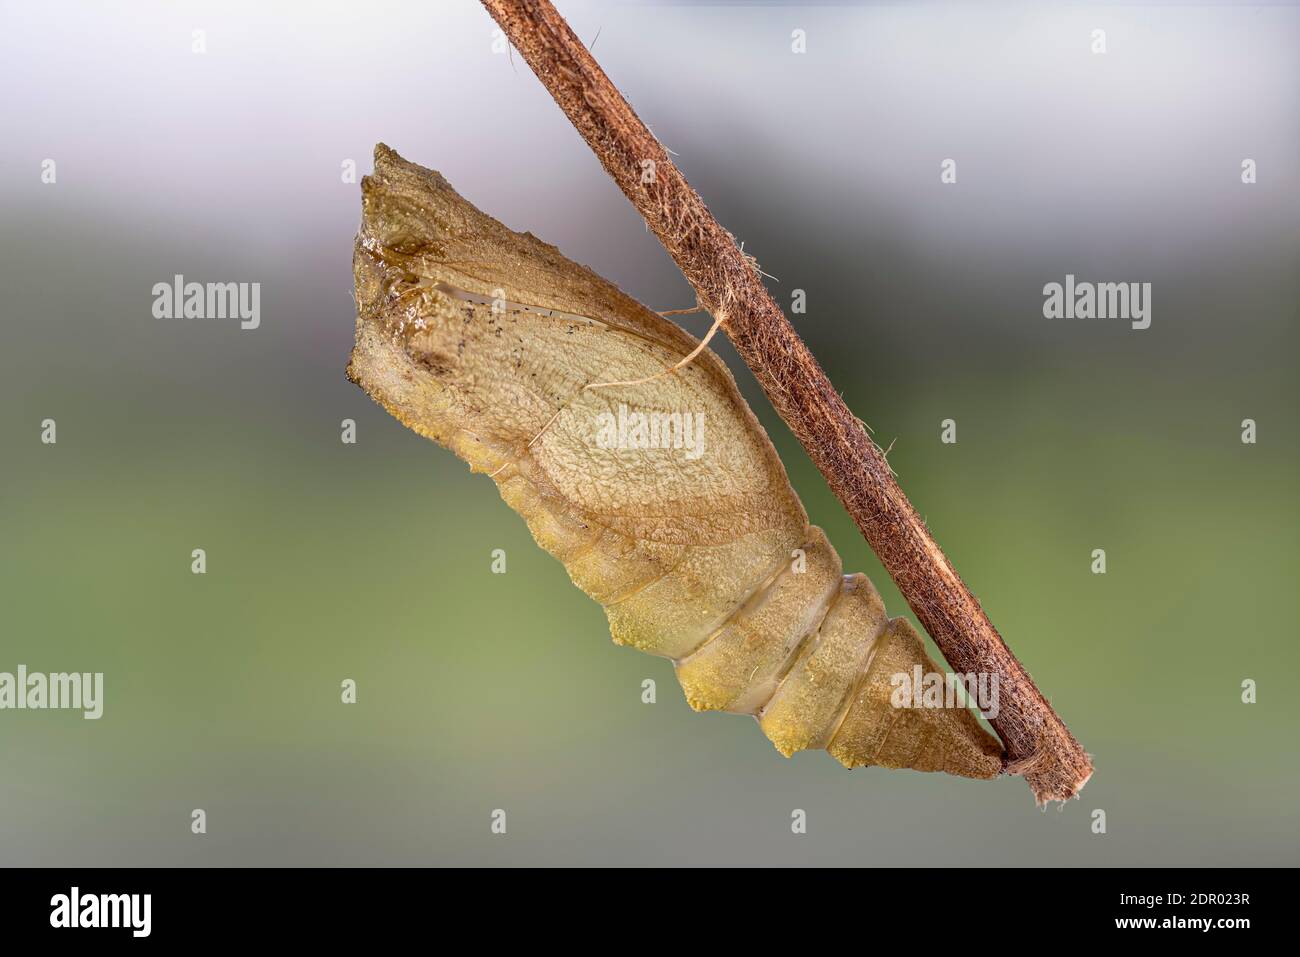 Queue de cygne (Papilio machaon), quiver pupal accroché à la branche, Allemagne Banque D'Images